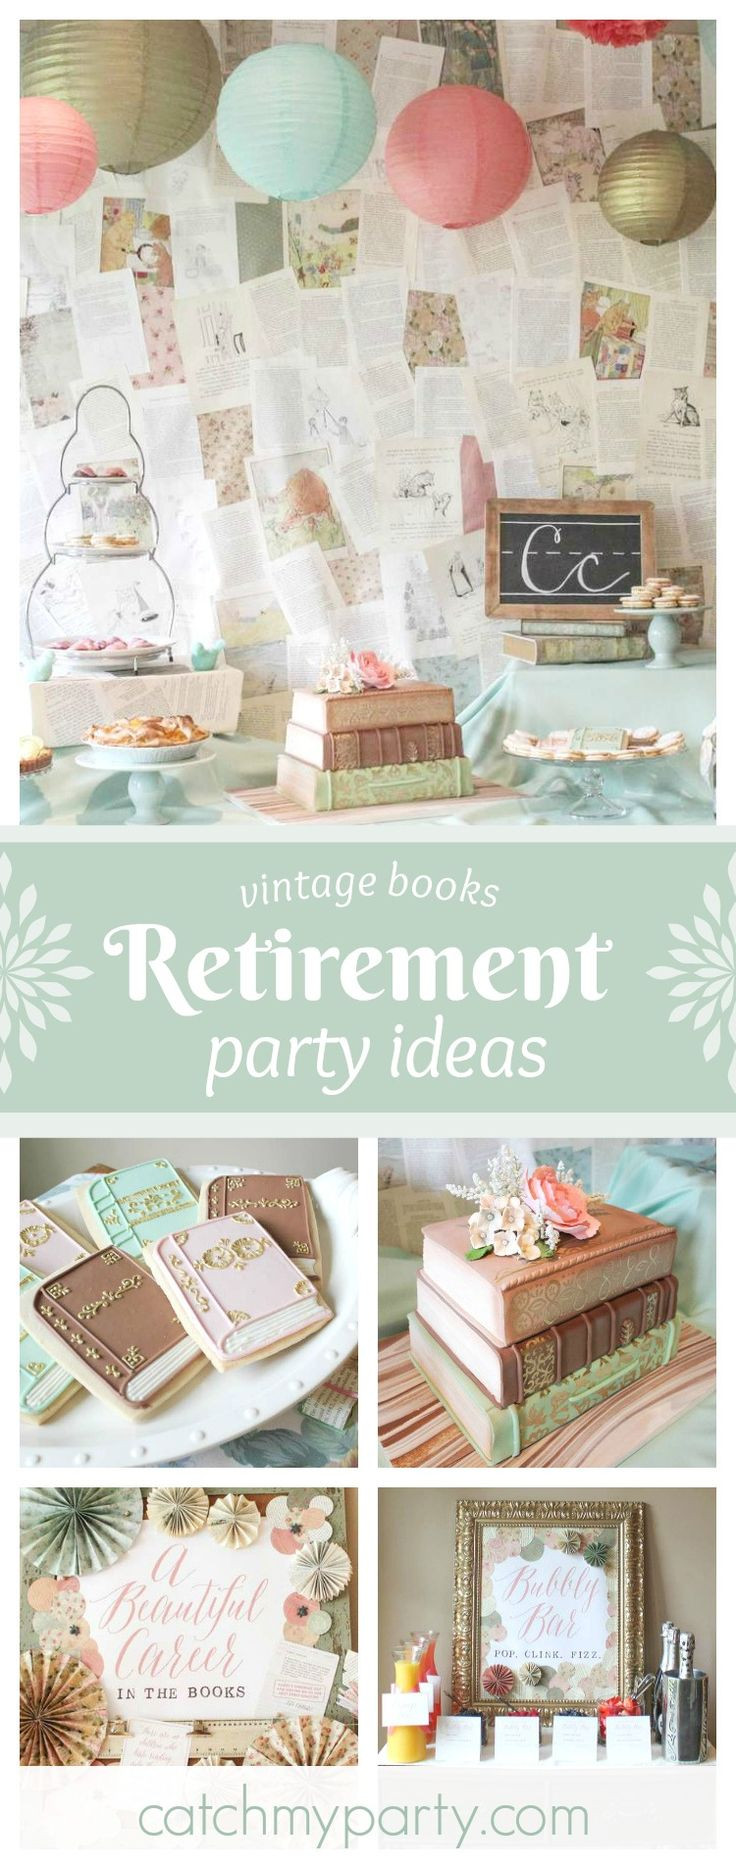 Retirement Party Themes Ideas
 Best 25 Retirement party themes ideas on Pinterest